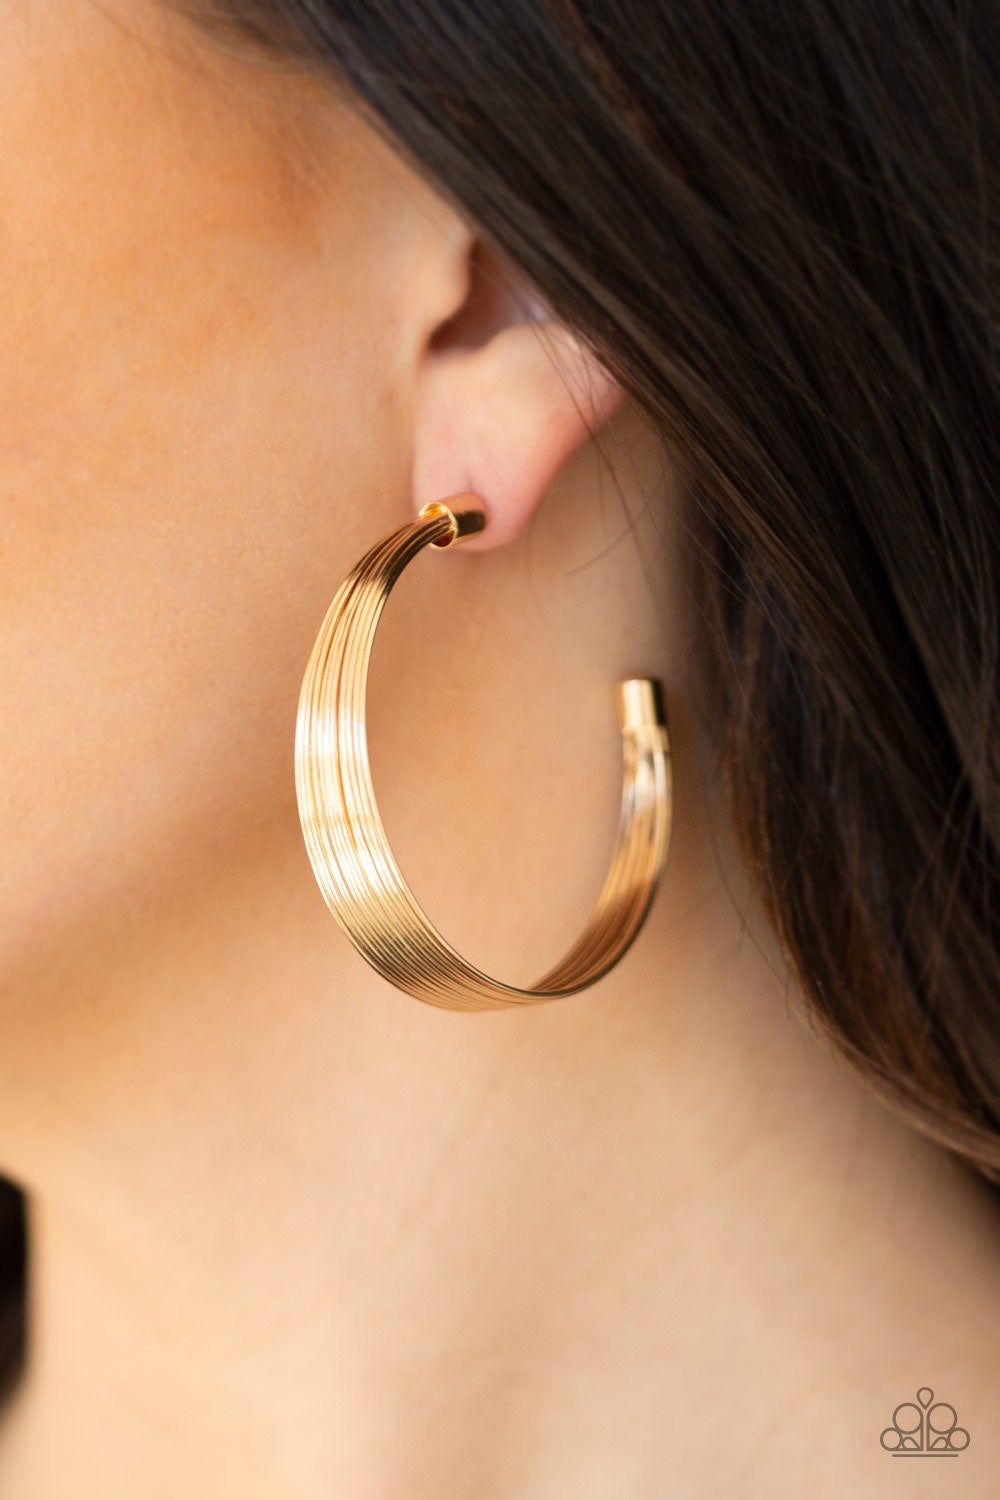 Earrings, Sensitive Ears, Sensitive Skin, Hypoallergenic Jewelry, gold, hoops